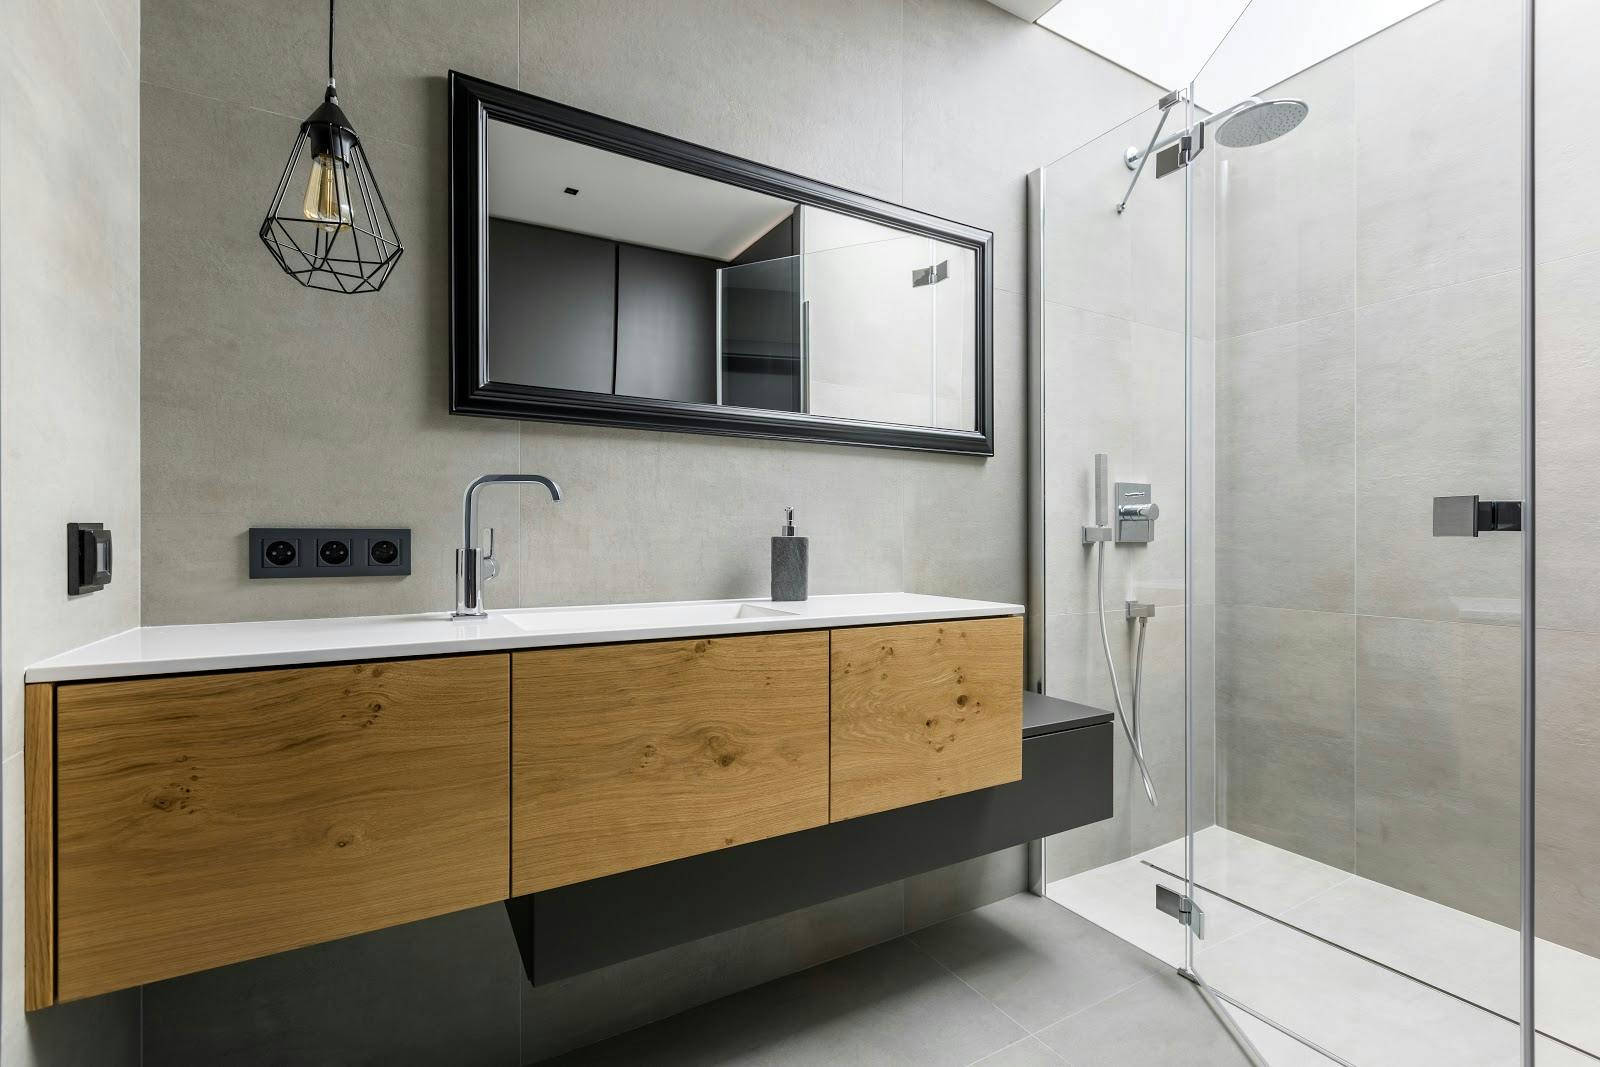 Diseño en el cuarto de baño: ideas para que sustituir la bañera por un  plato de